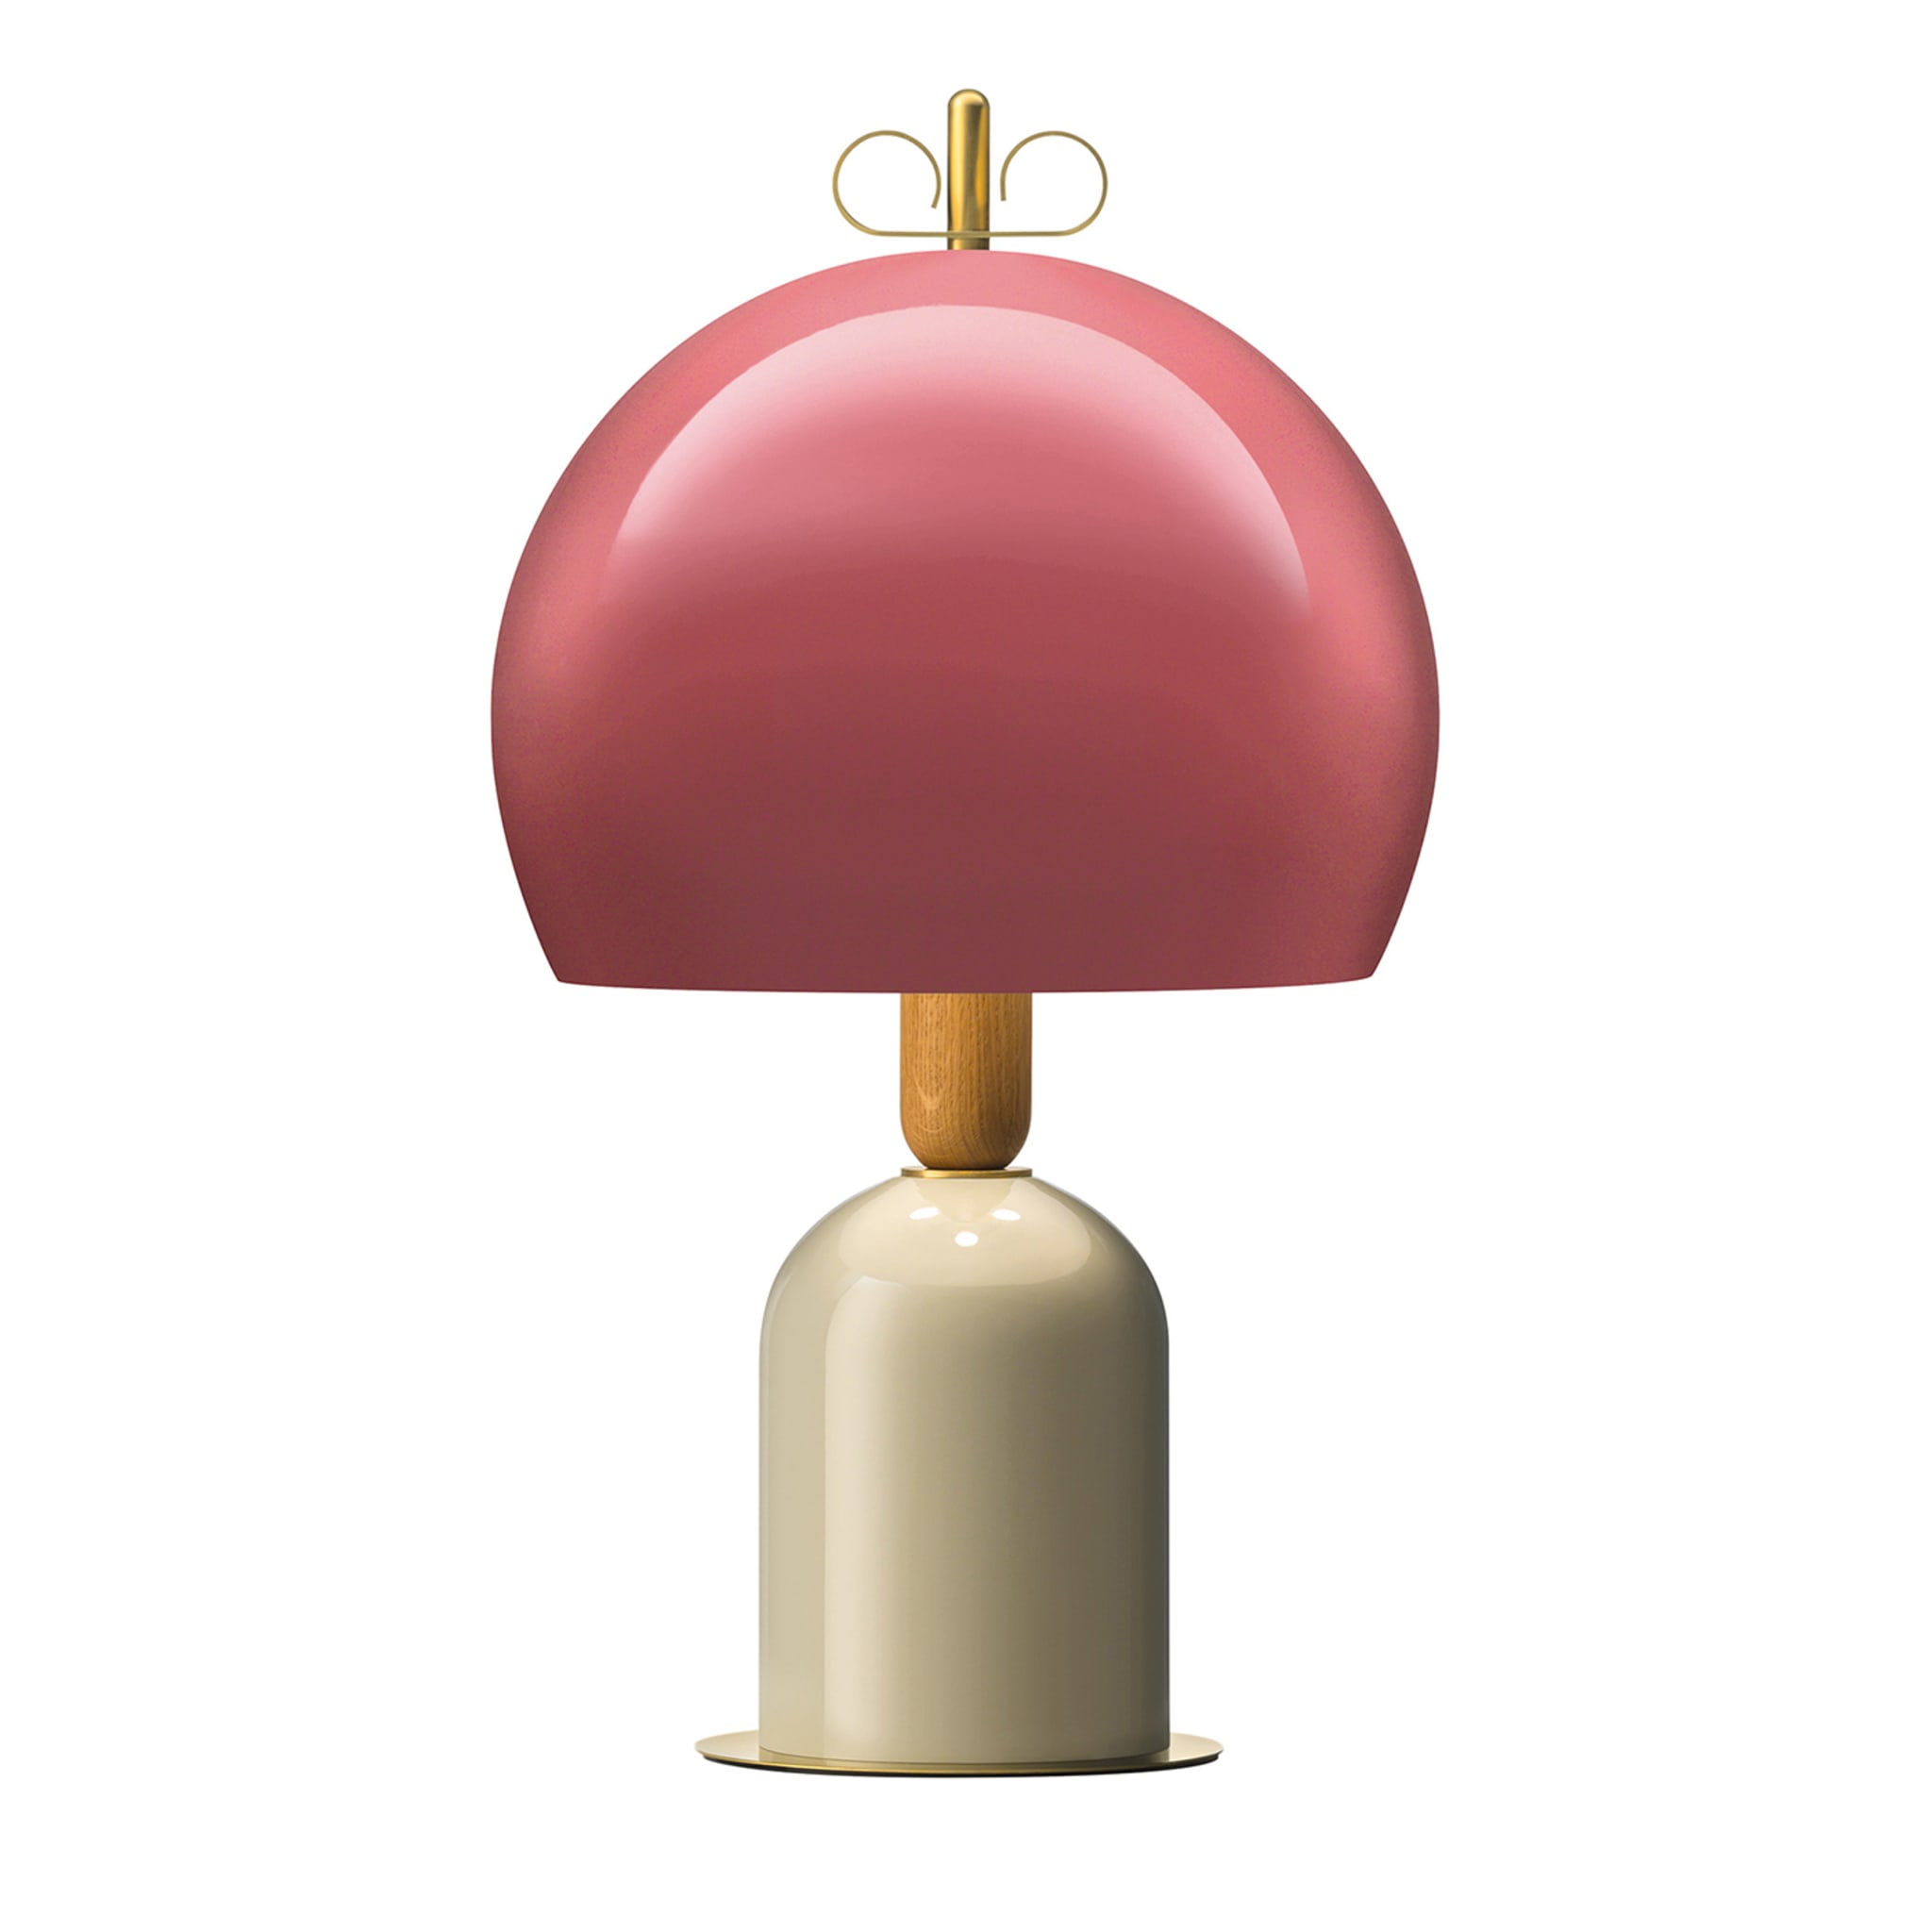 Buy Il Fanale Bonton 400 Pink / Brass by Cristina Celestino